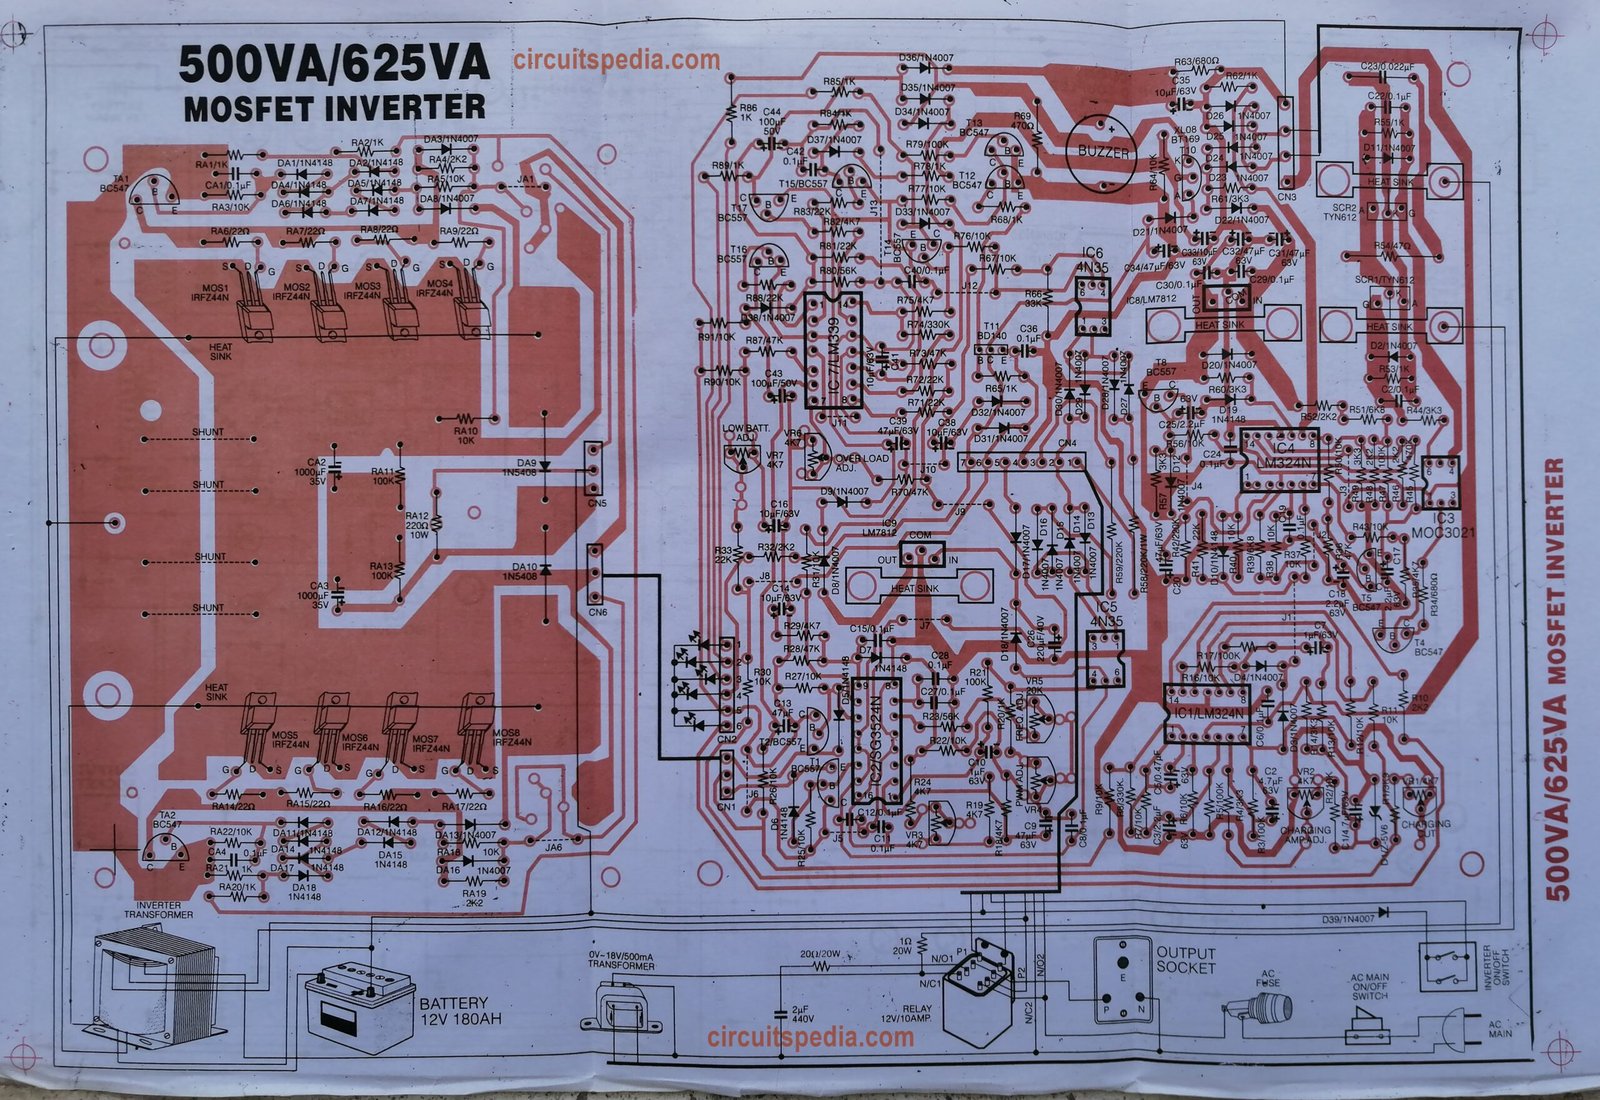 500VA inverter circuit